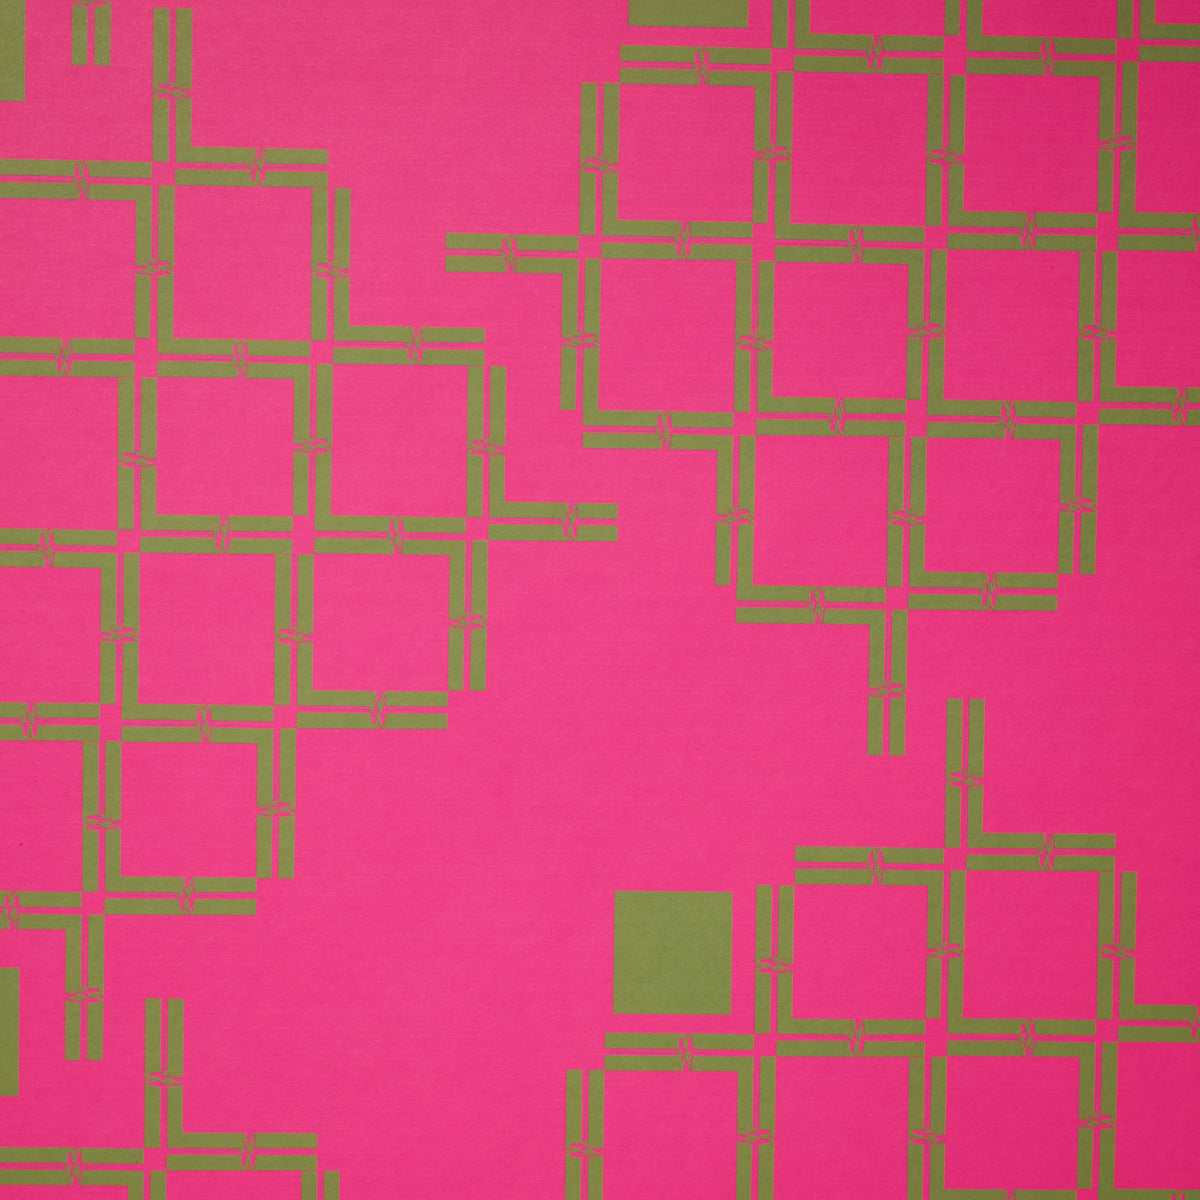 Laz Studio Squares Digital Wallpaper (Hot Pink)